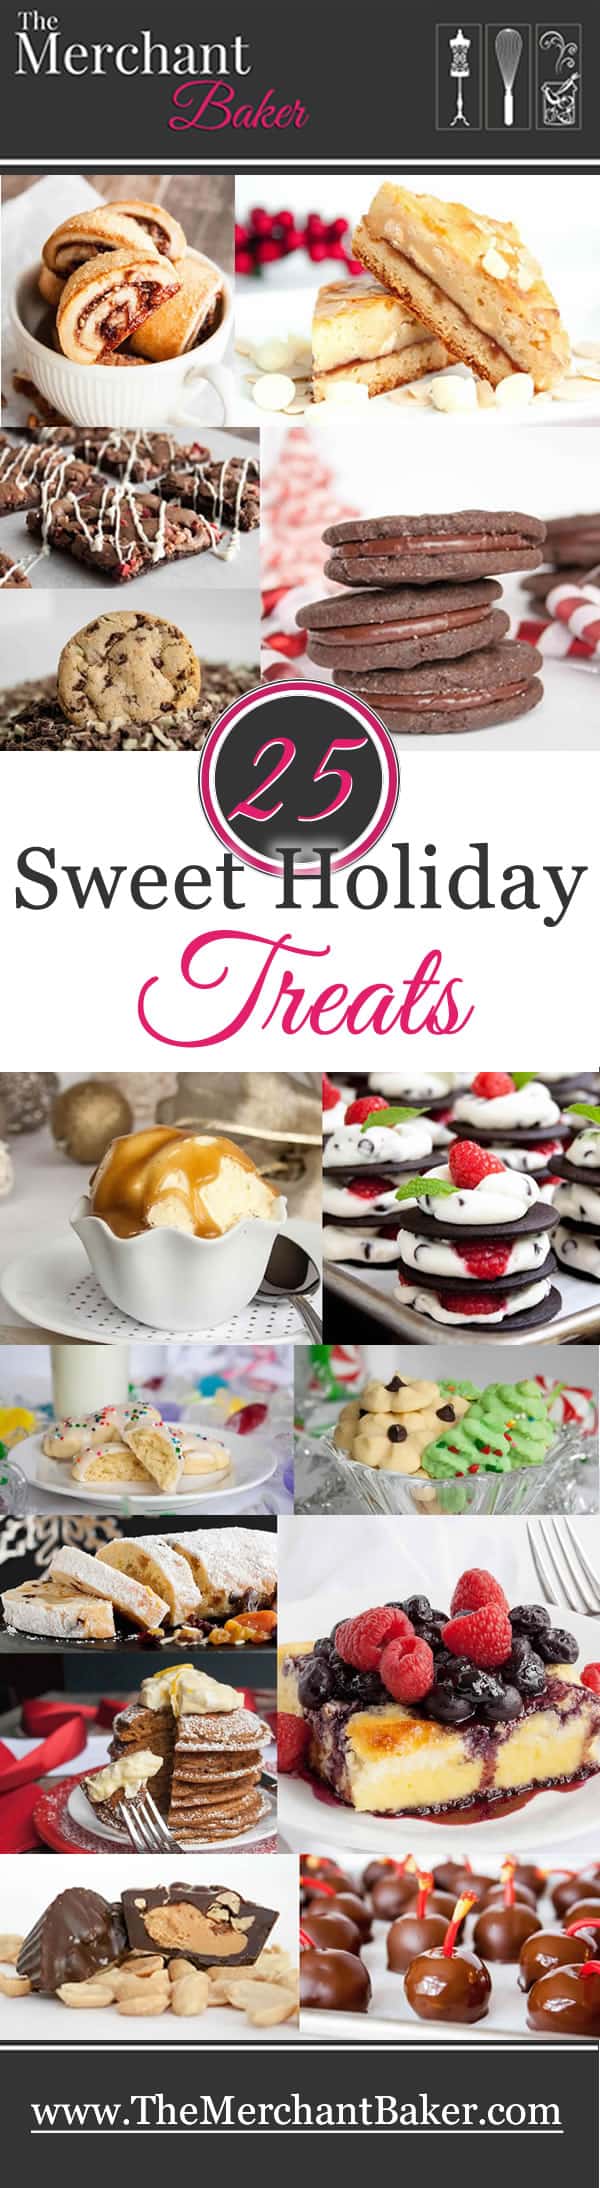 25-Sweet-Holiday-Treats